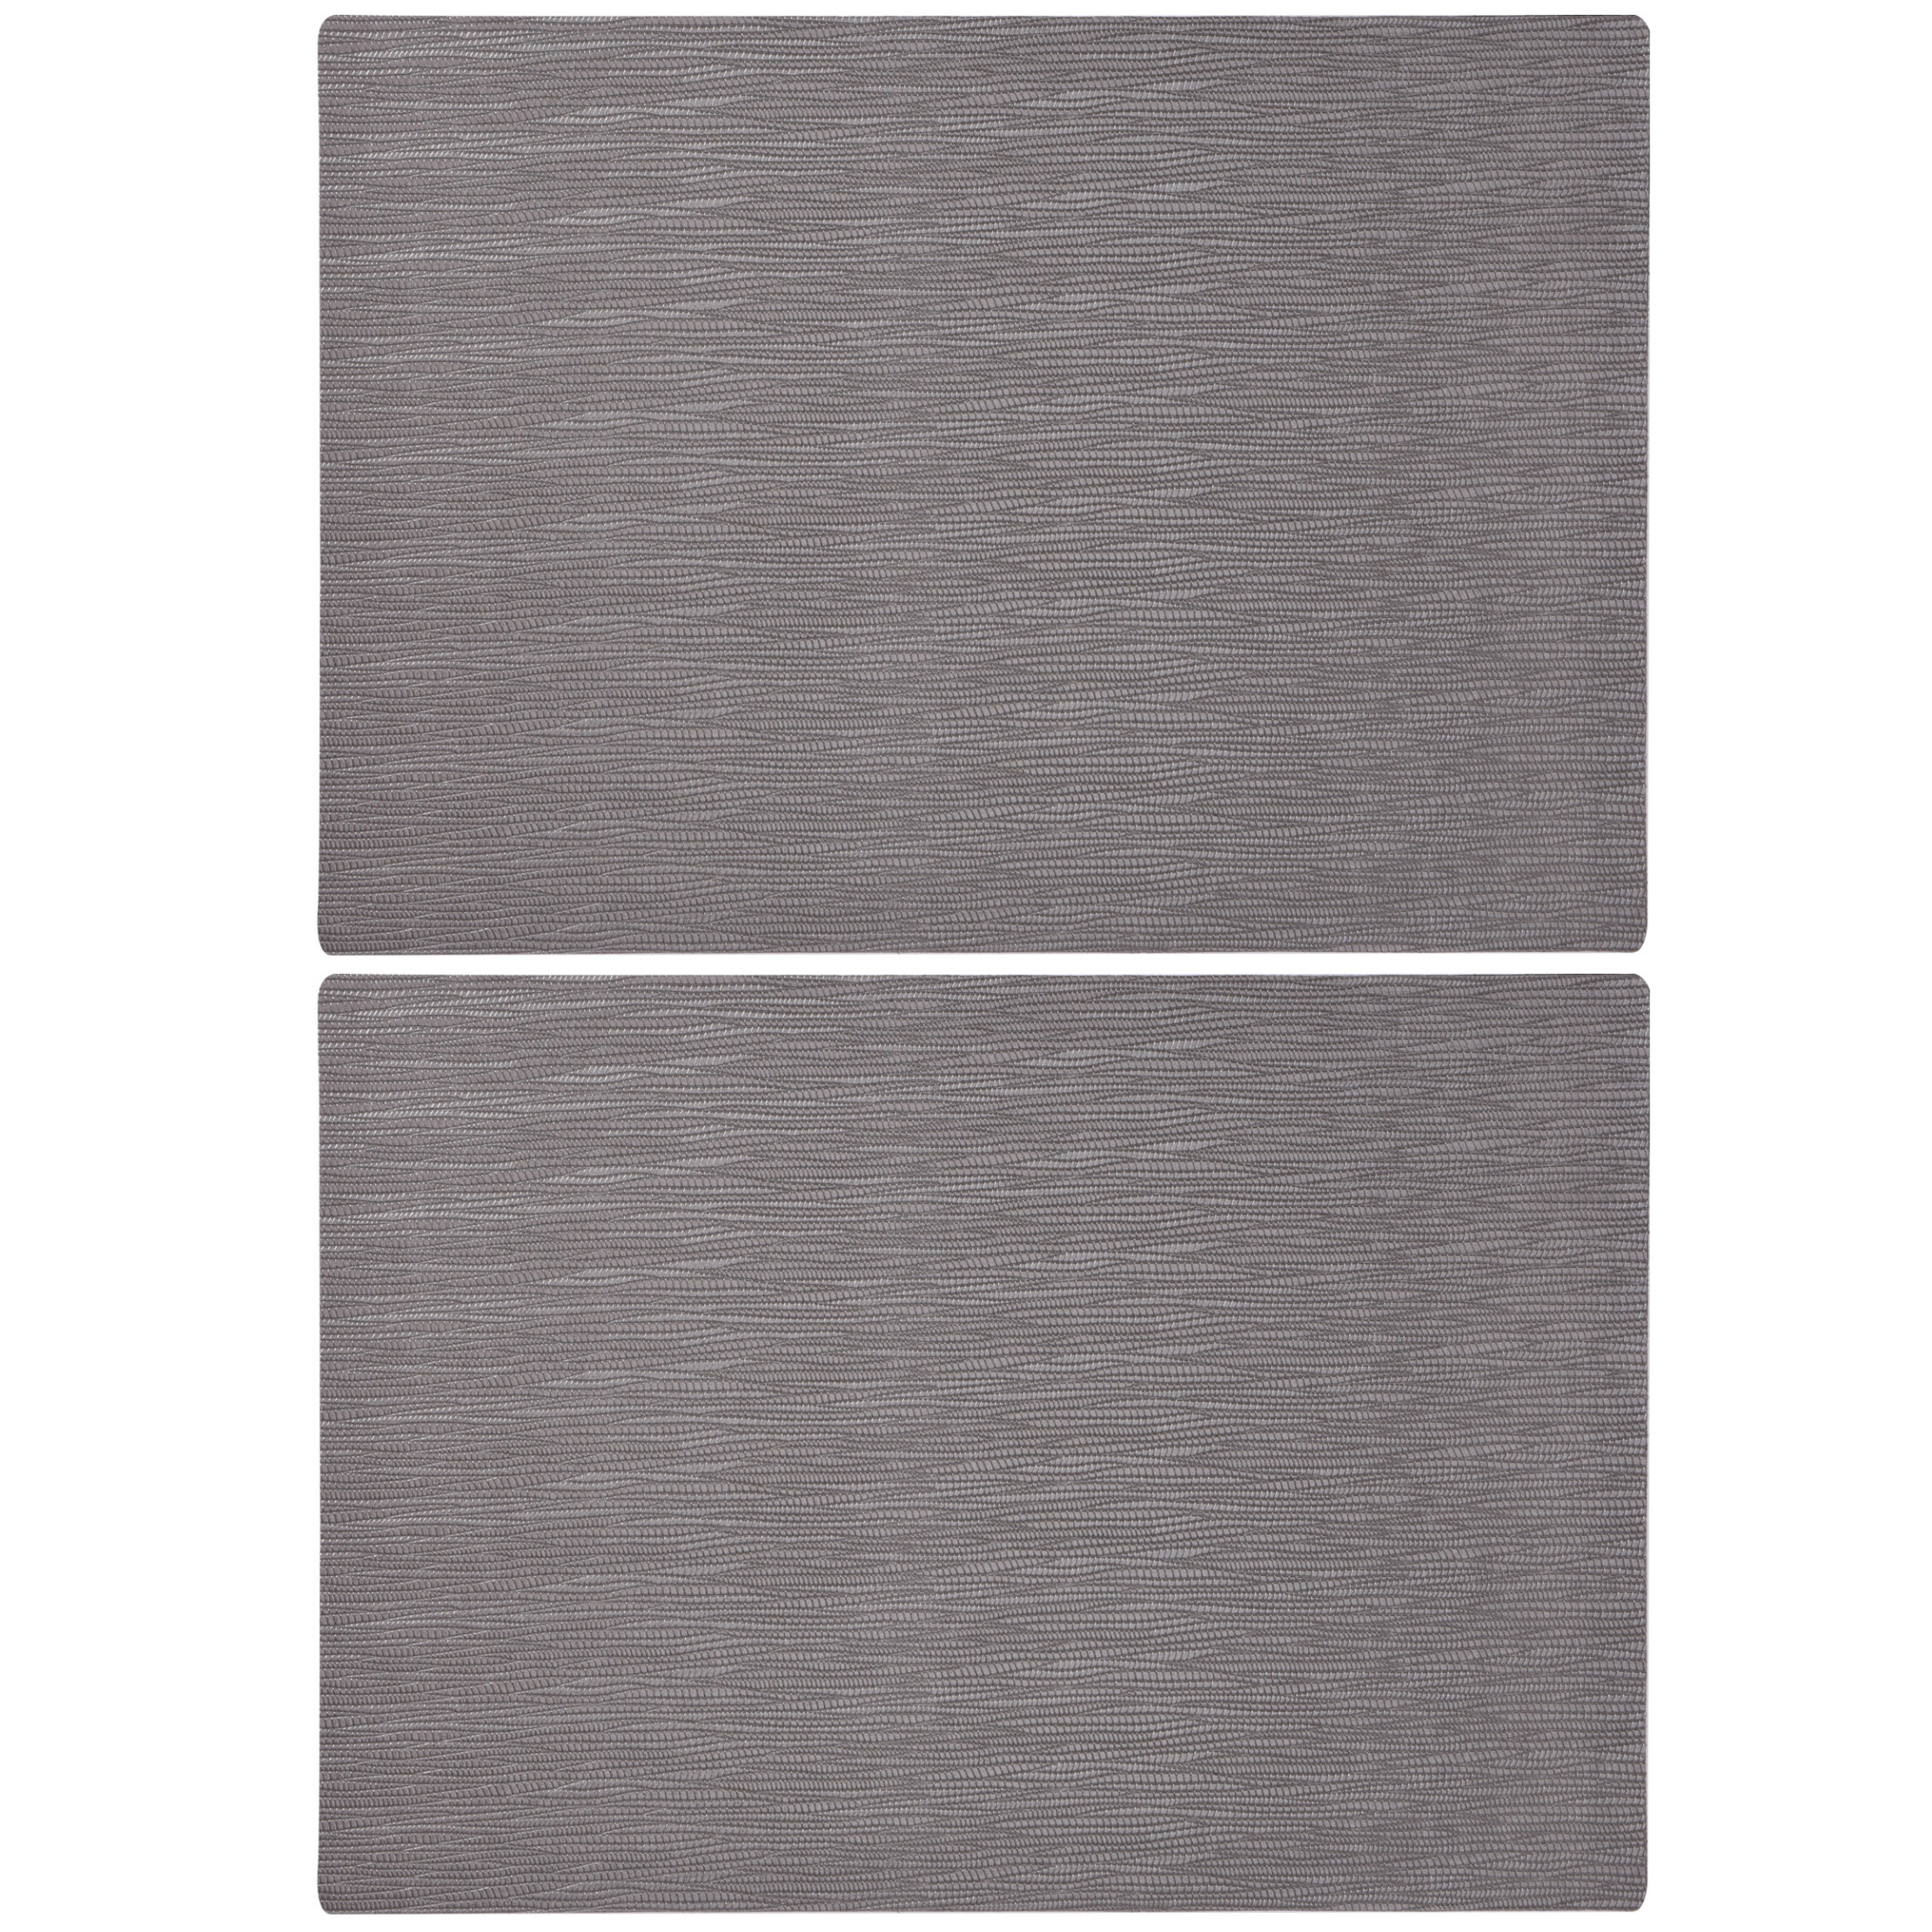 Merkloos Set van 2x stuks rechthoekige placemats grijs 43 x 30 cm leder look -